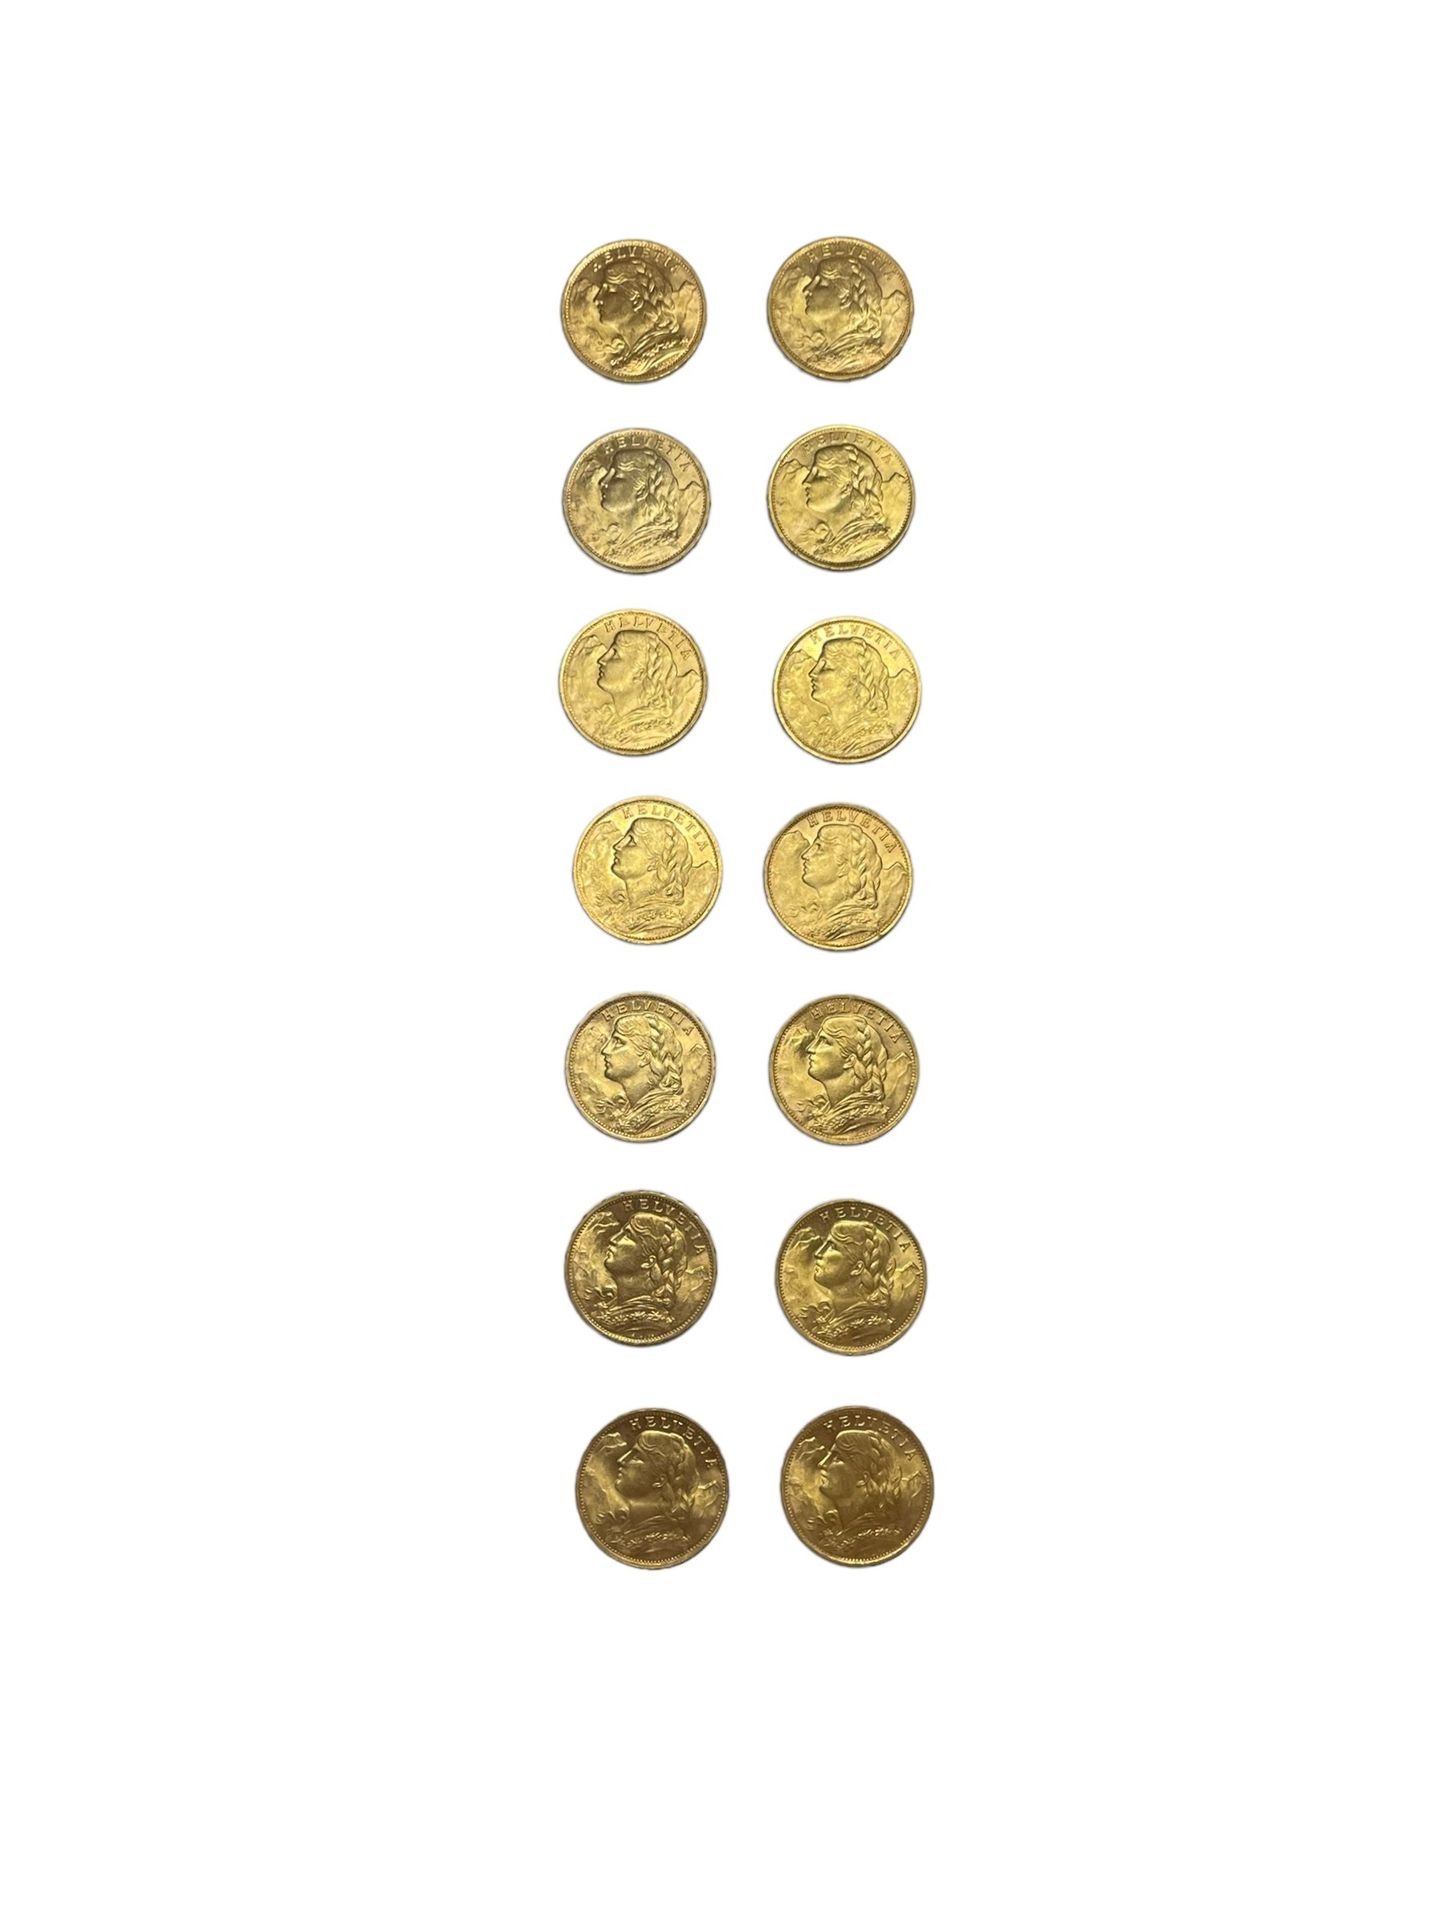 Null SUISSE
14 pièces 20 francs or
Poids : 90.2 g